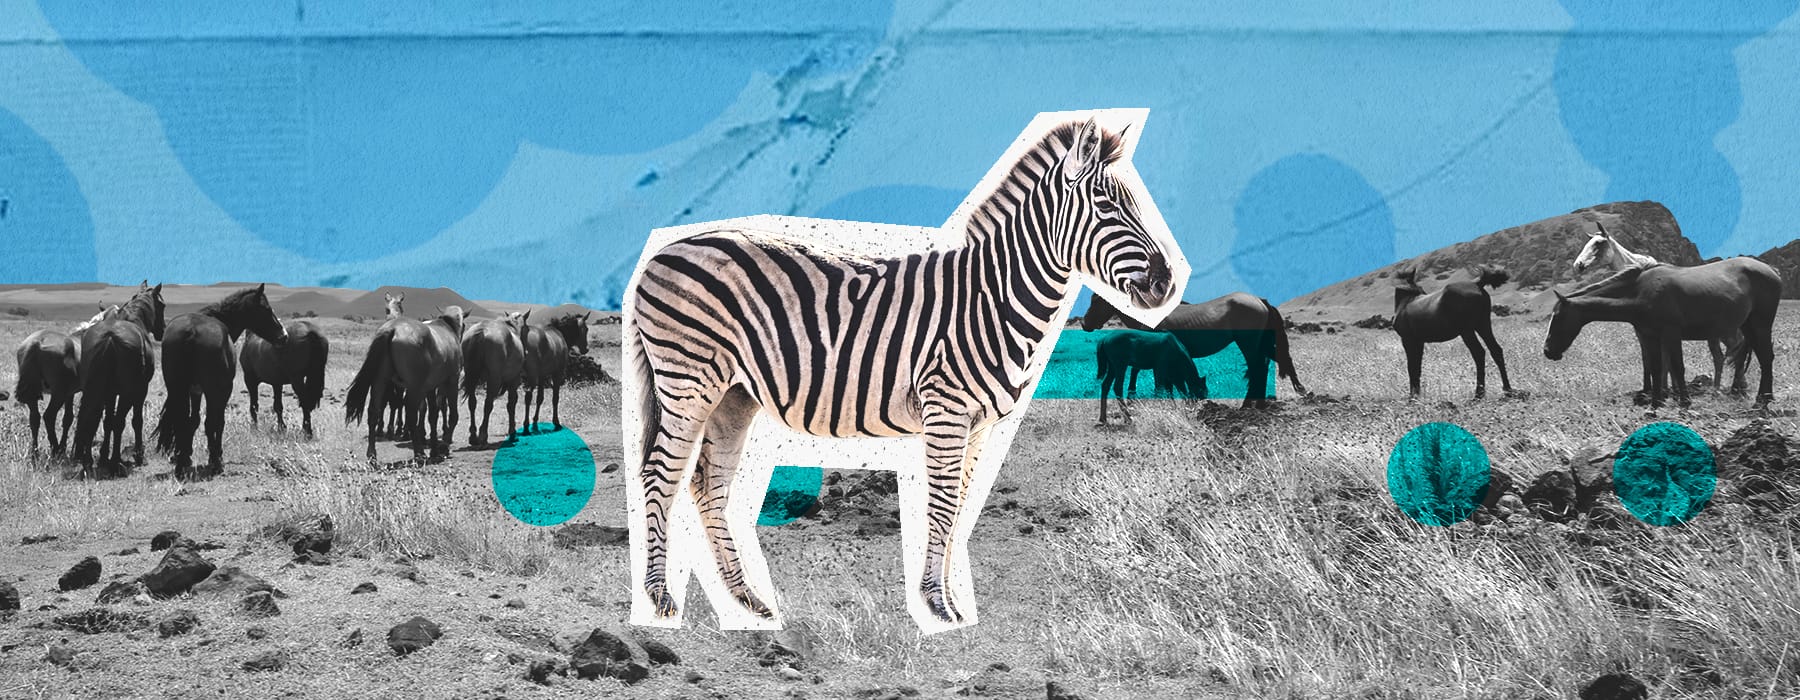 zebra on a blue background